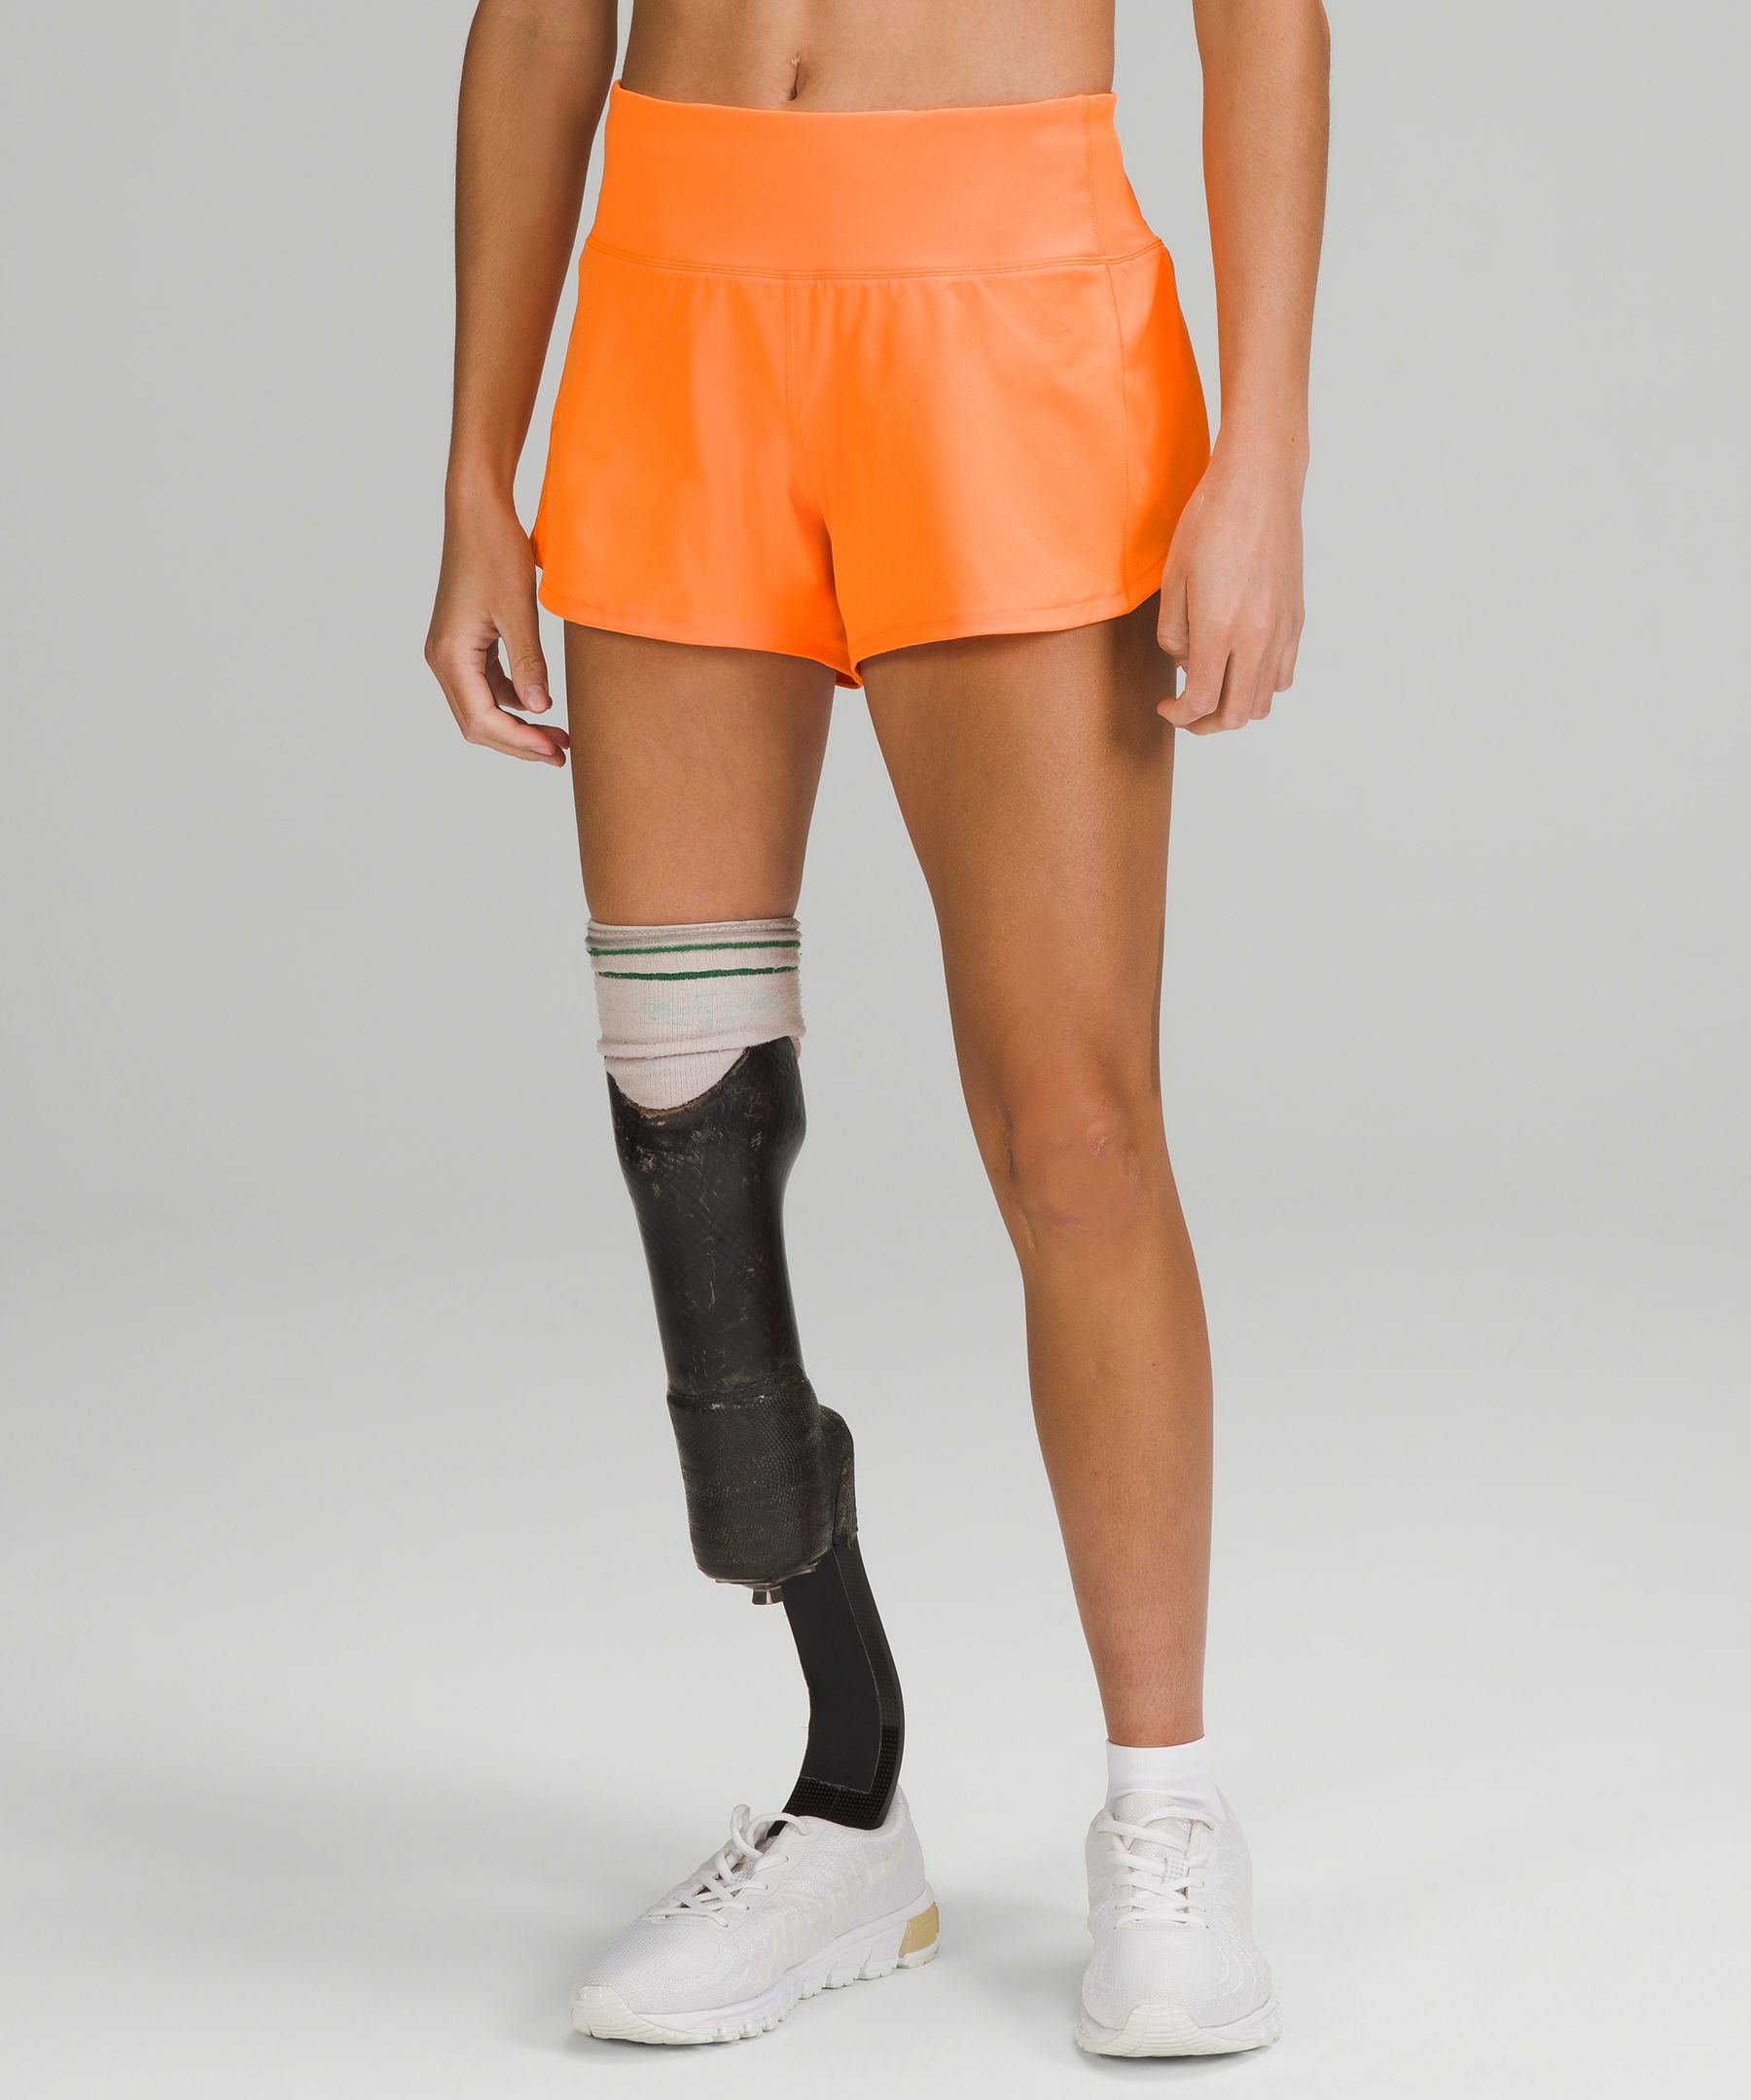 Lululemon Speed Up Mid-rise Lined Shorts 4" In Orange